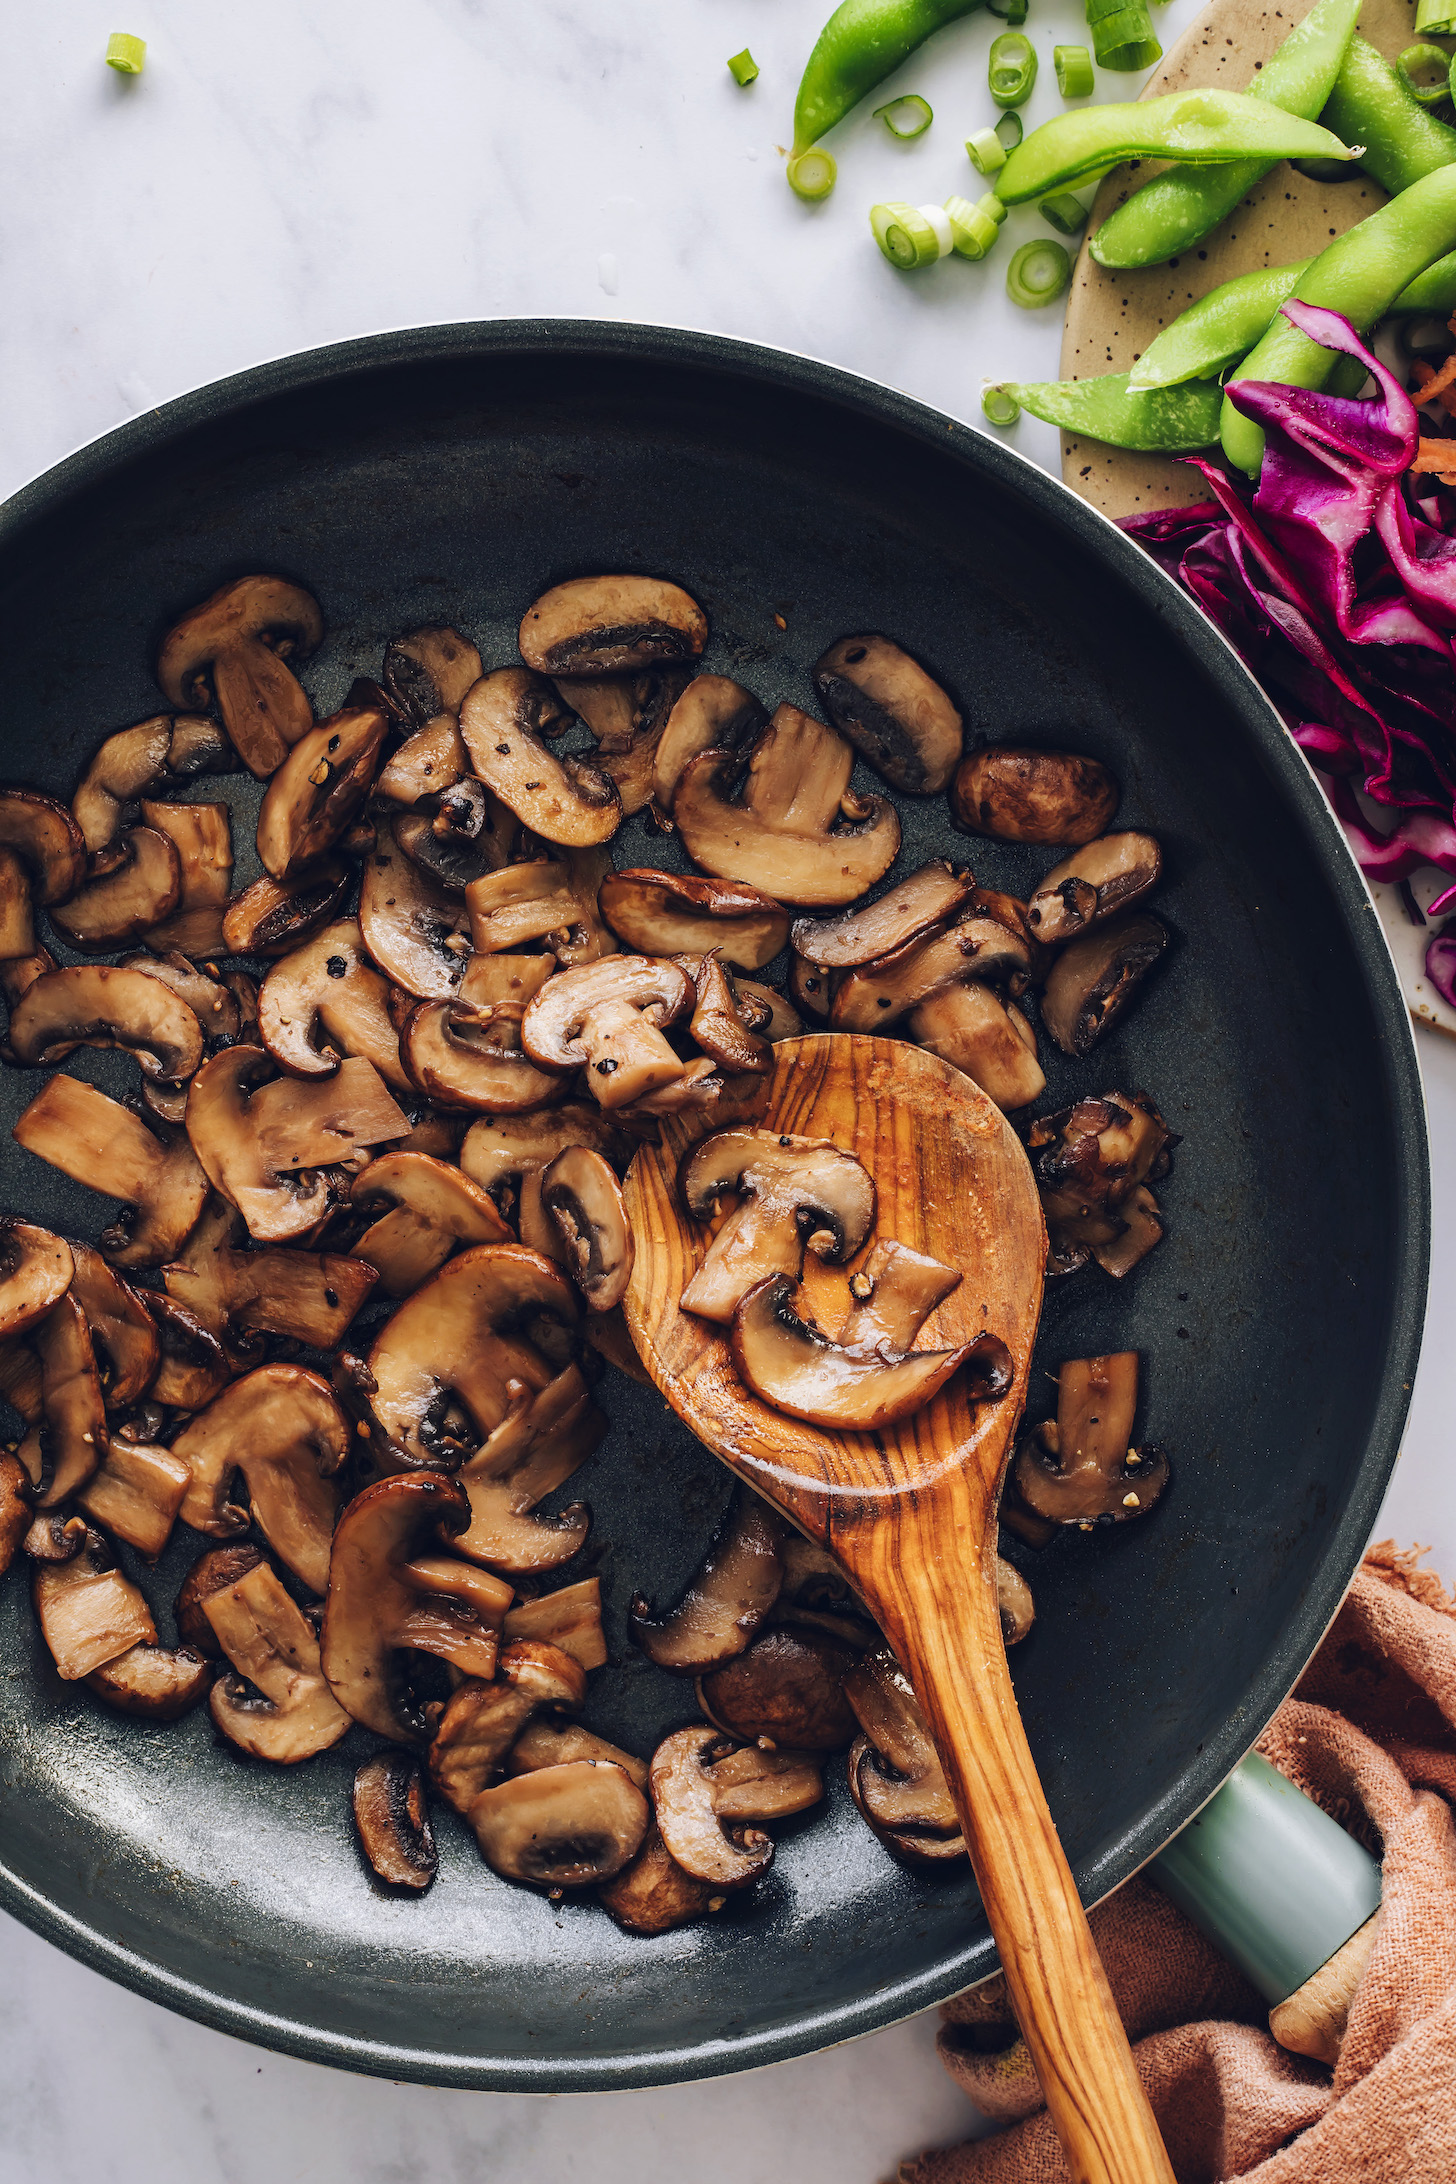 Sauter les champignons à l'huile de sésame grillé